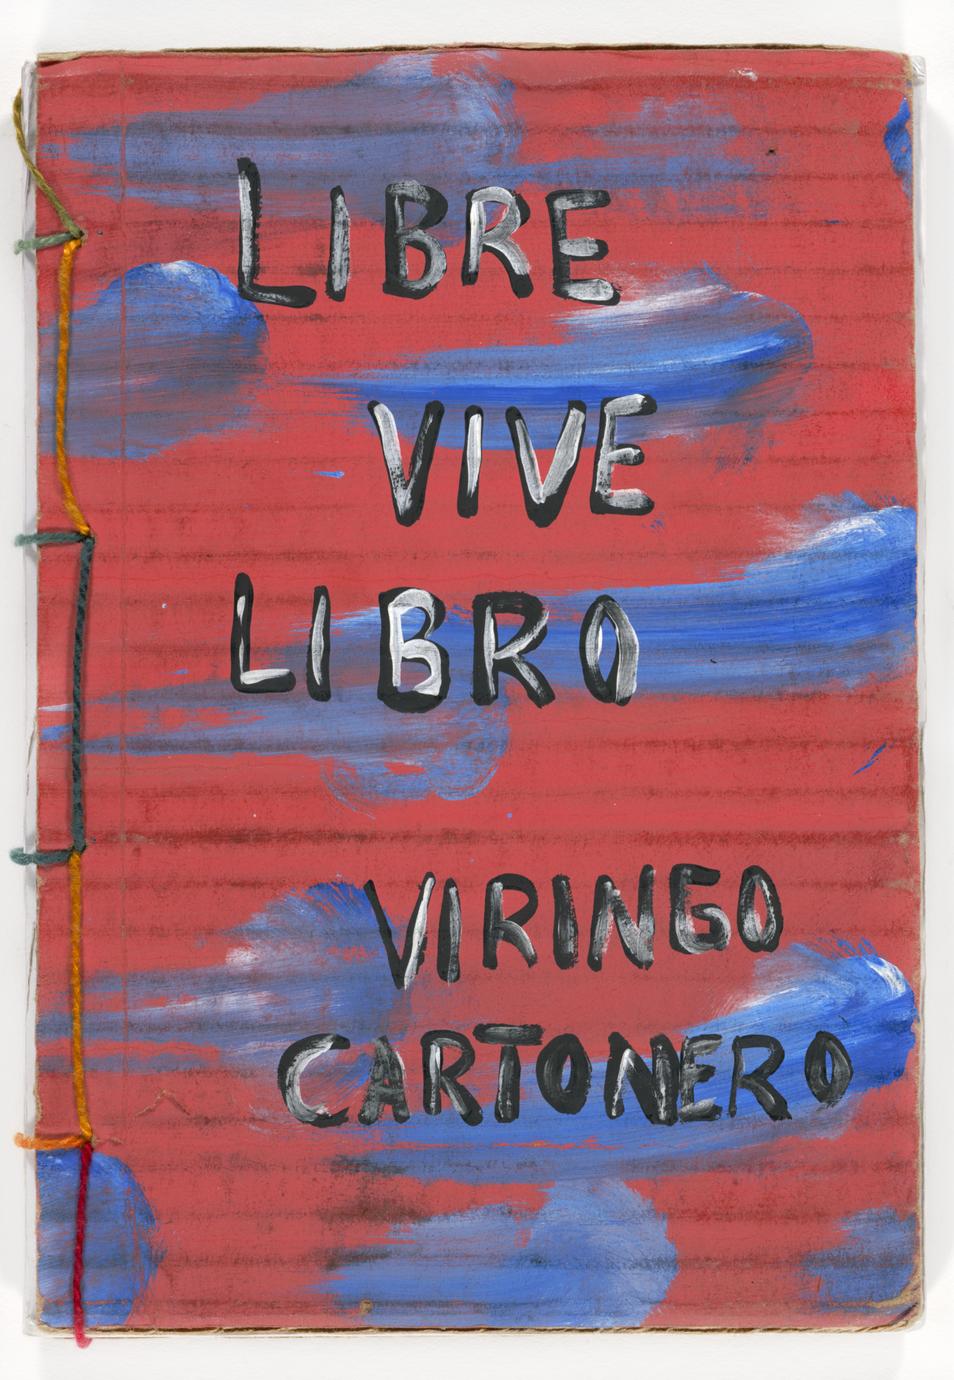 Libre vive libro  : propósitos y experiencias de las editoriales cartoneras (1 of 3)